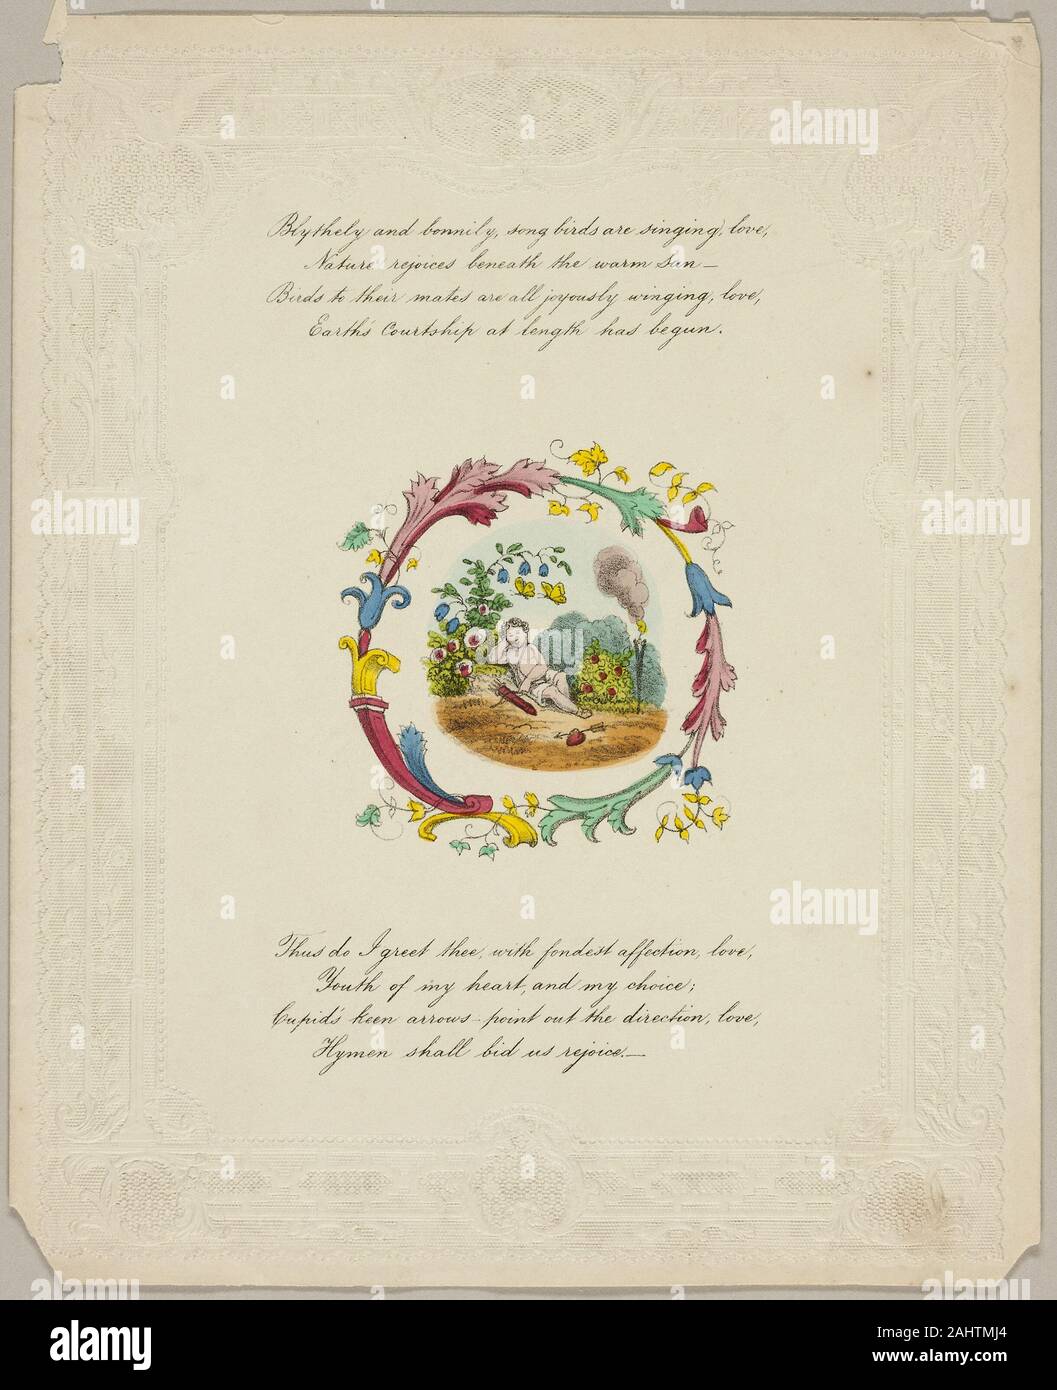 Bonnily et allègrement, chanson les oiseaux chantent l'amour (valentine). 1840-1860. L'Angleterre. Lithographie à part-coloration sur vélin ivoire gaufré Banque D'Images